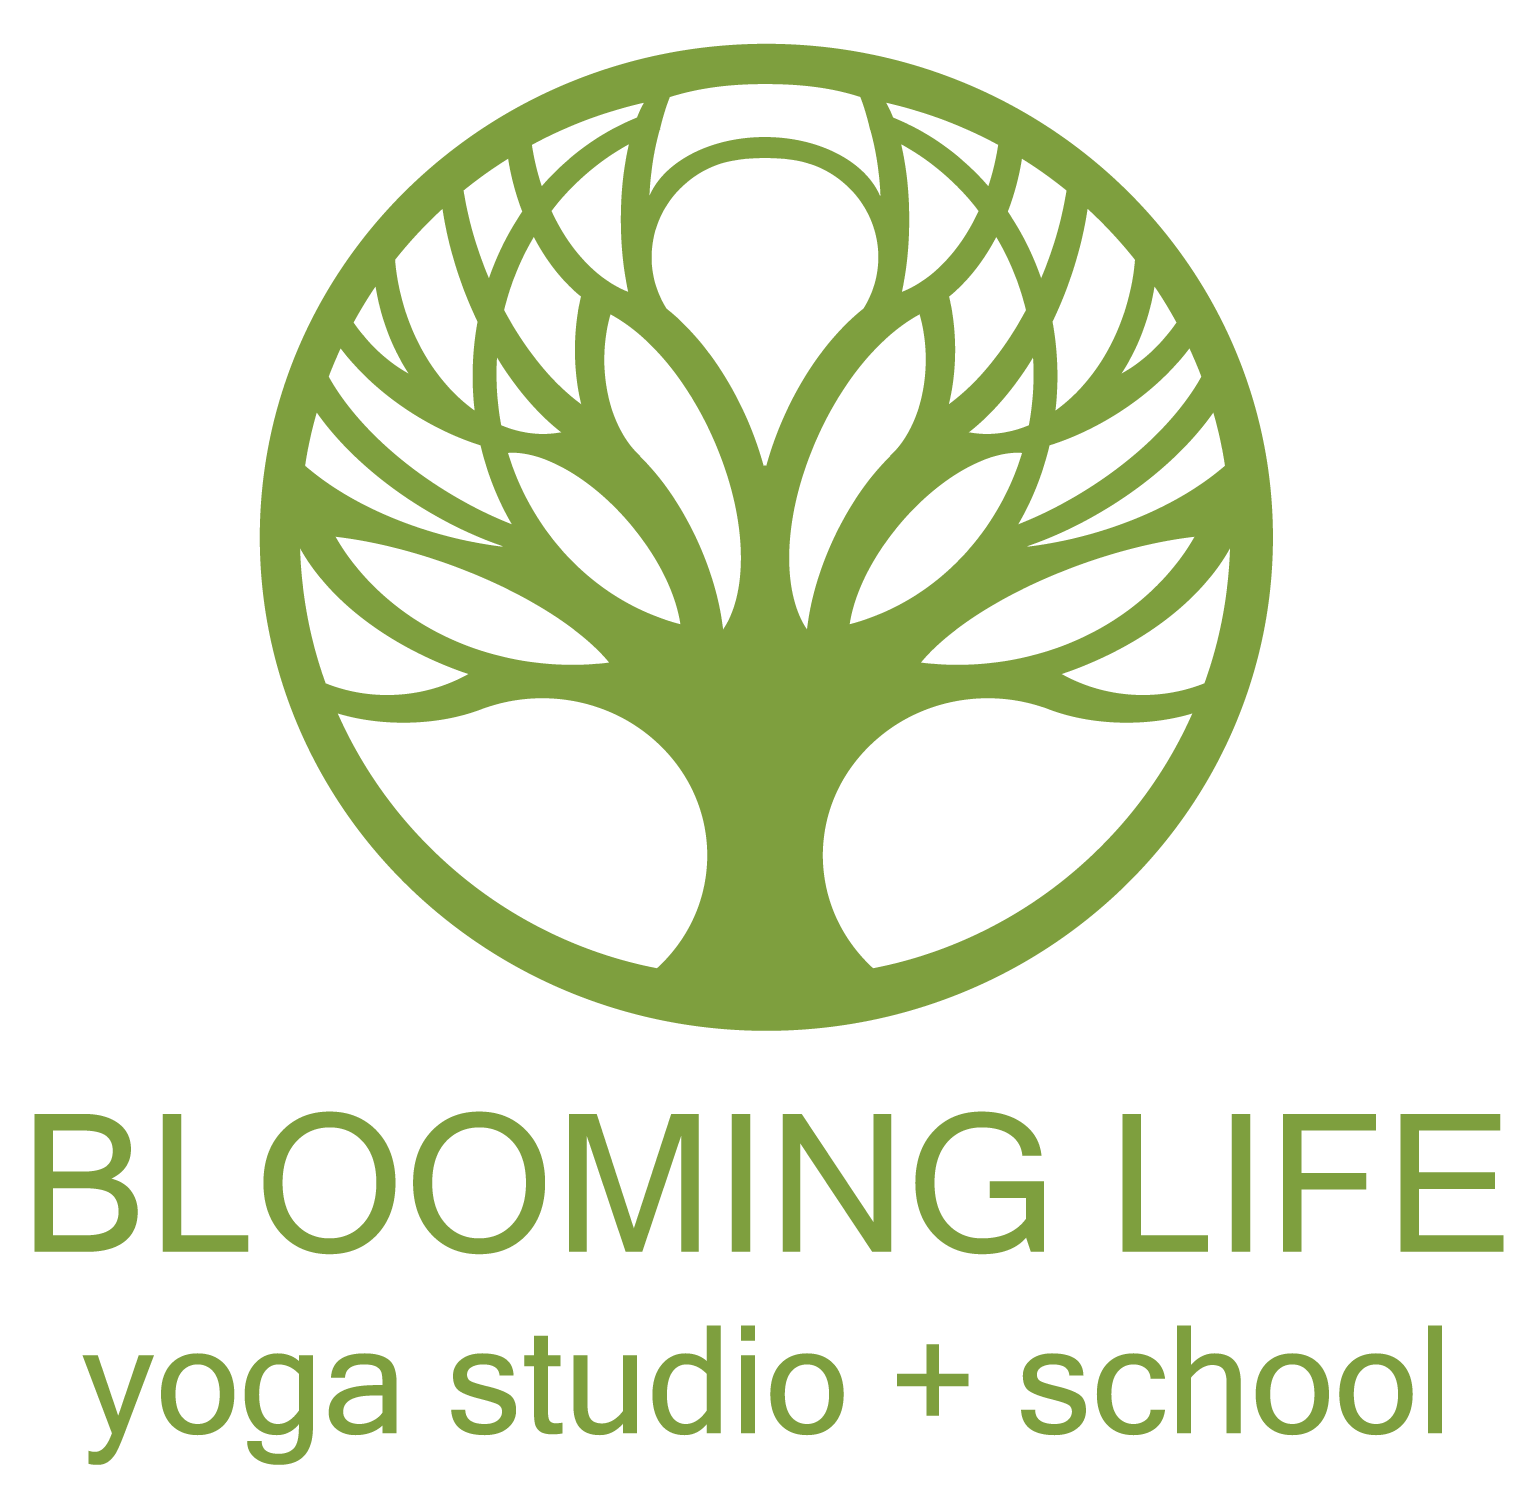 Blooming Life Yoga Studio + School - Yoga Studio in Zionsville